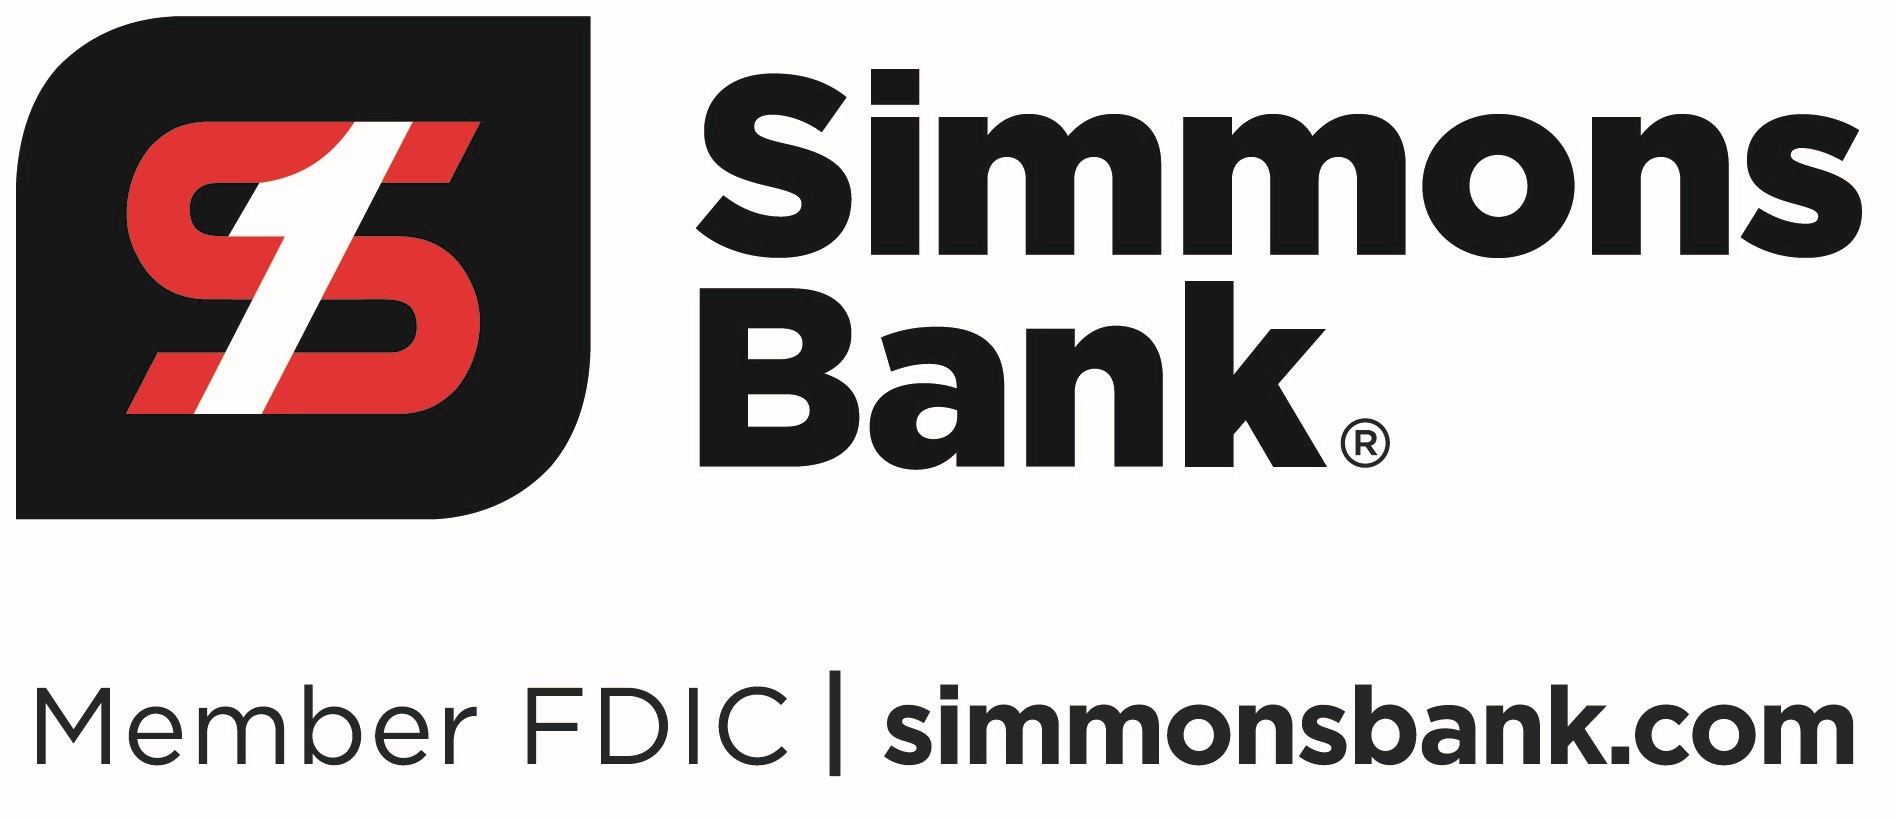 Simmons Bank - LBJ